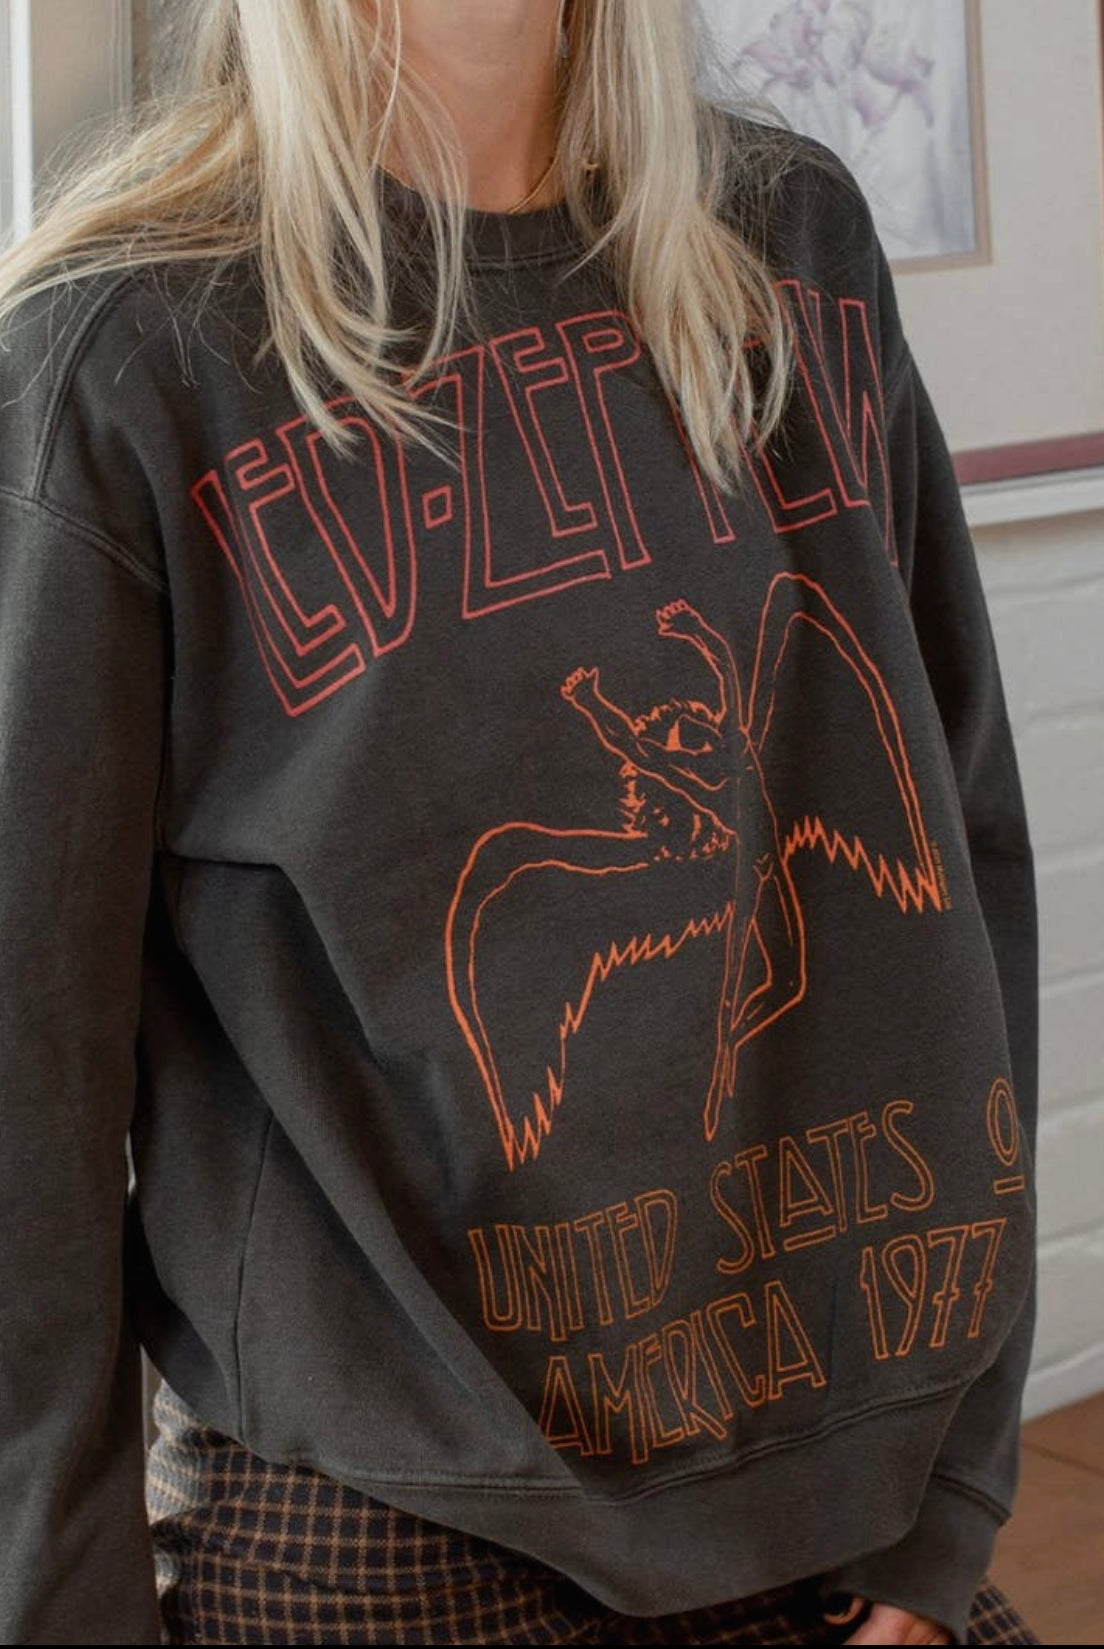 
  
  People of Leisure Led Zeppelin USA Sweatshirt
  
